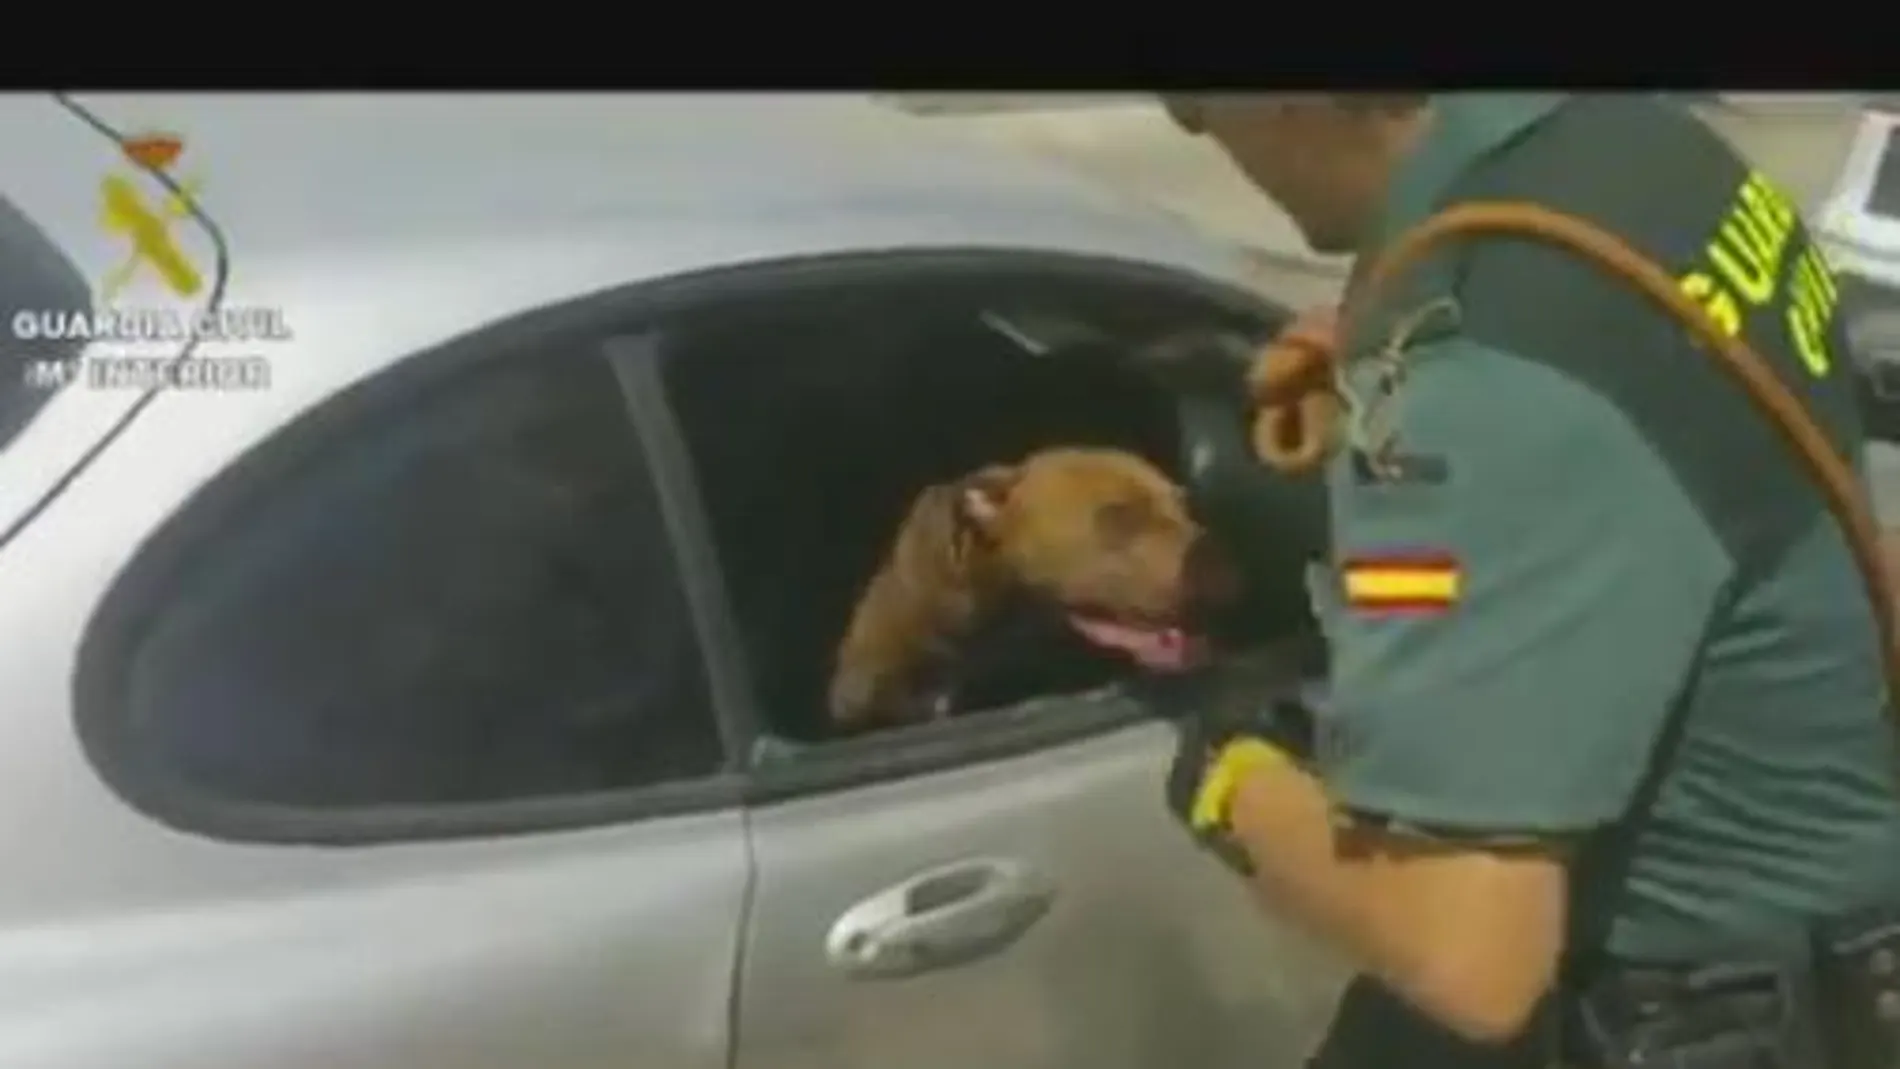 La Guardia Civil rescata a una perra de un coche estacionado a pleno sol